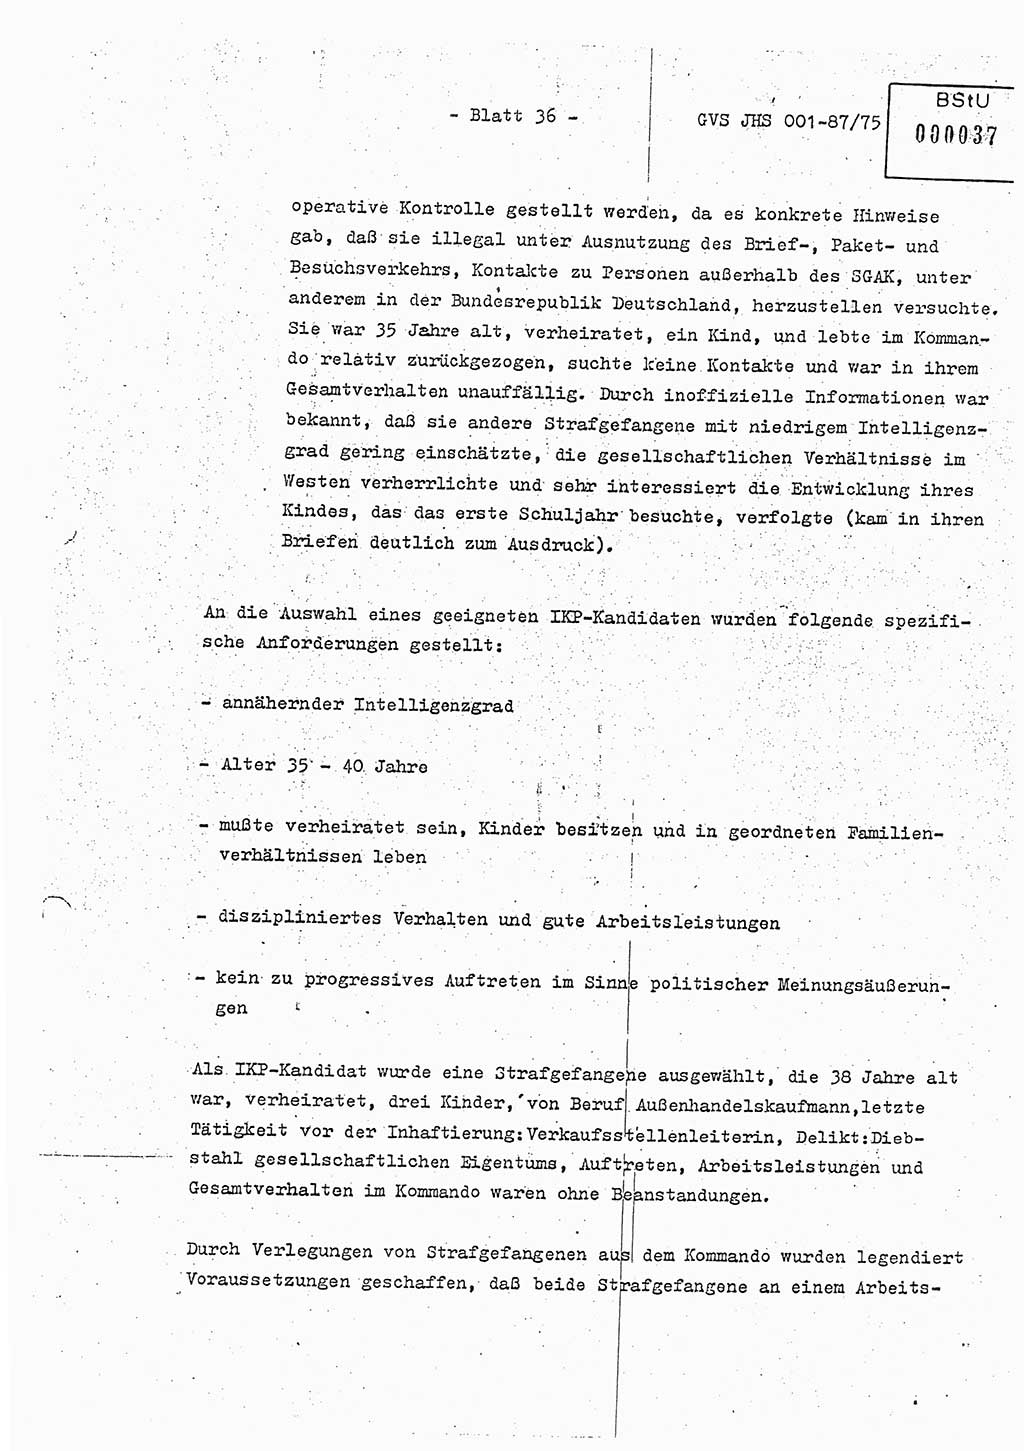 Diplomarbeit Hauptmann Volkmar Heinz (Abt. ⅩⅣ), Oberleutnant Lothar Rüdiger (BV Lpz. Abt. Ⅺ), Ministerium für Staatssicherheit (MfS) [Deutsche Demokratische Republik (DDR)], Juristische Hochschule (JHS), Geheime Verschlußsache (GVS) o001-87/75, Potsdam 1975, Seite 36 (Dipl.-Arb. MfS DDR JHS GVS o001-87/75 1975, S. 36)